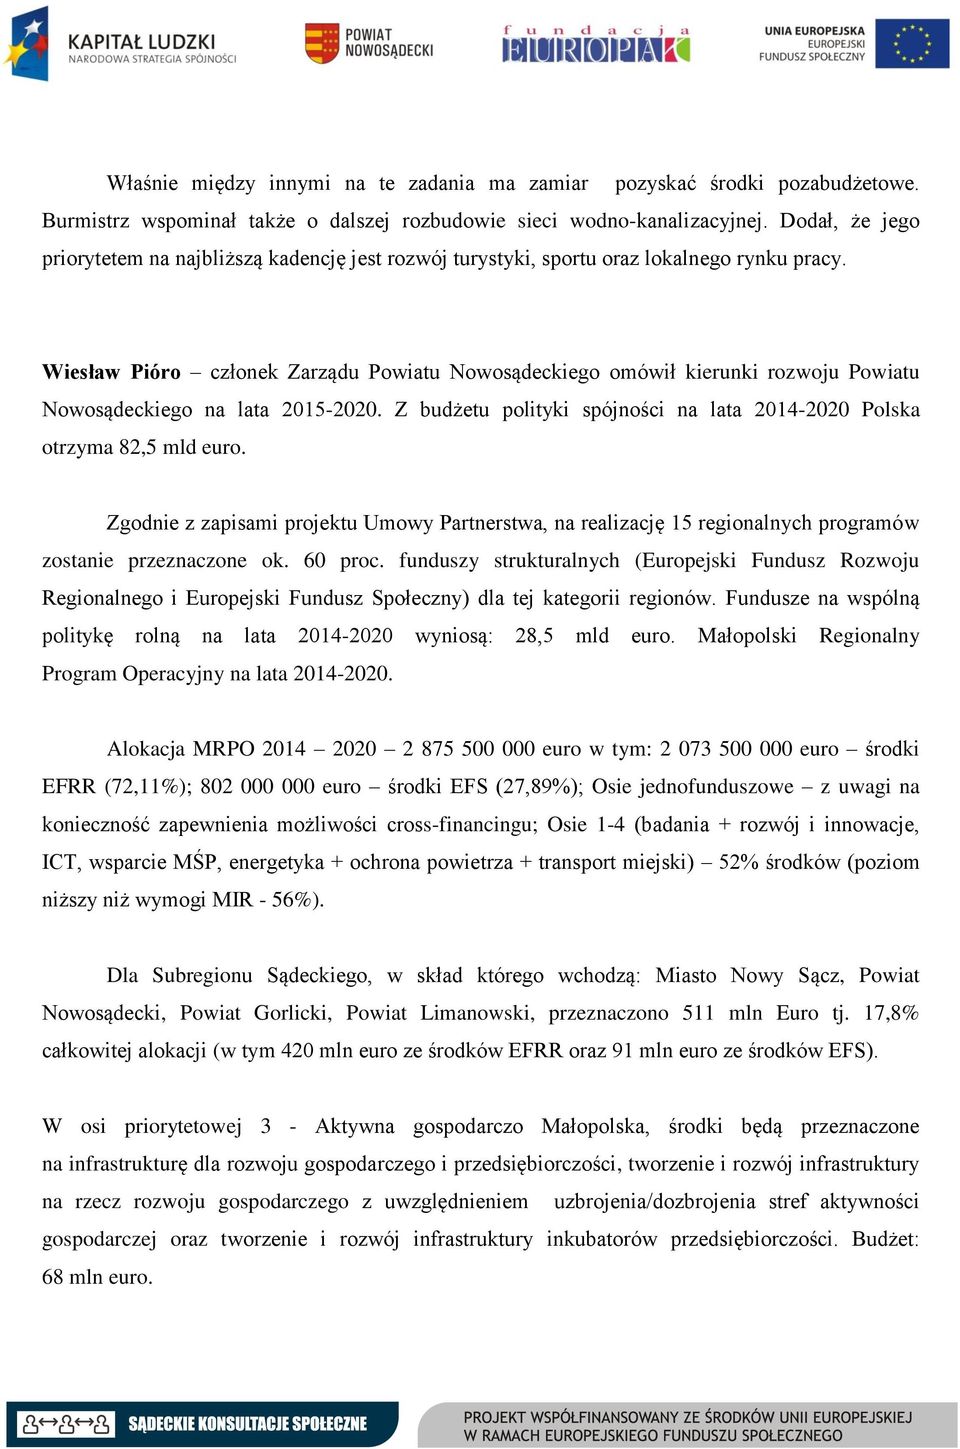 Wiesław Pióro członek Zarządu Powiatu Nowosądeckiego omówił kierunki rozwoju Powiatu Nowosądeckiego na lata 2015-2020. Z budżetu polityki spójności na lata 2014-2020 Polska otrzyma 82,5 mld euro.